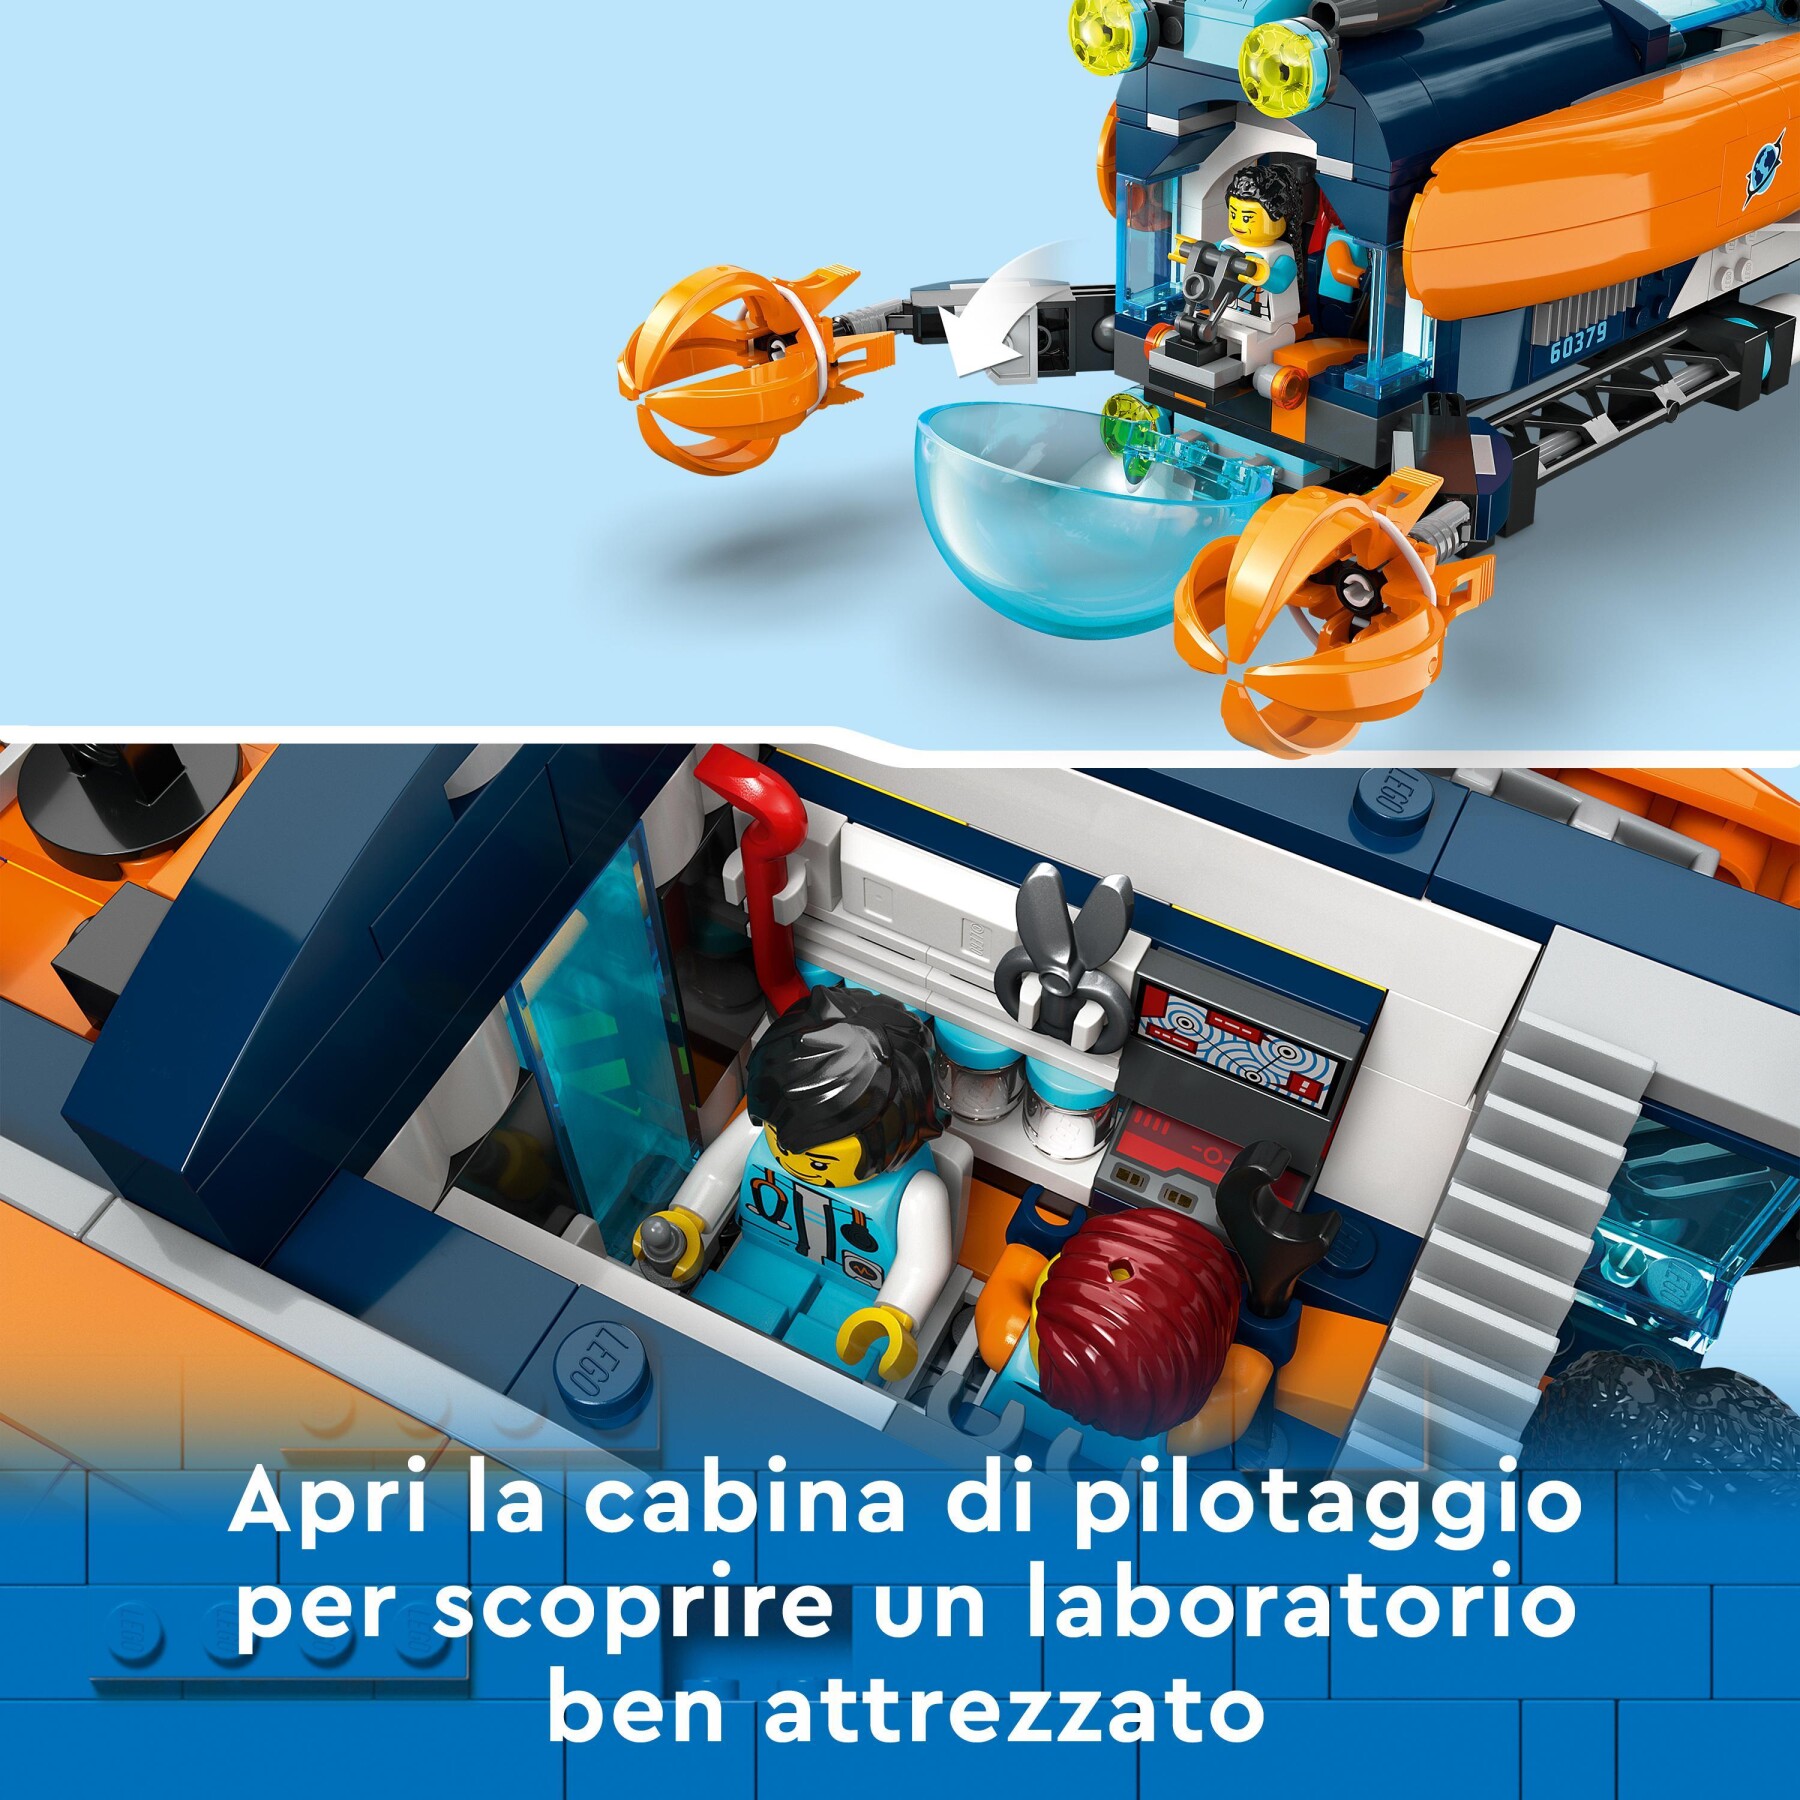 Lego city 60379 sottomarino per esplorazioni abissali giocattolo con drone e relitto di barca, regalo per bambini 7+ anni - LEGO CITY